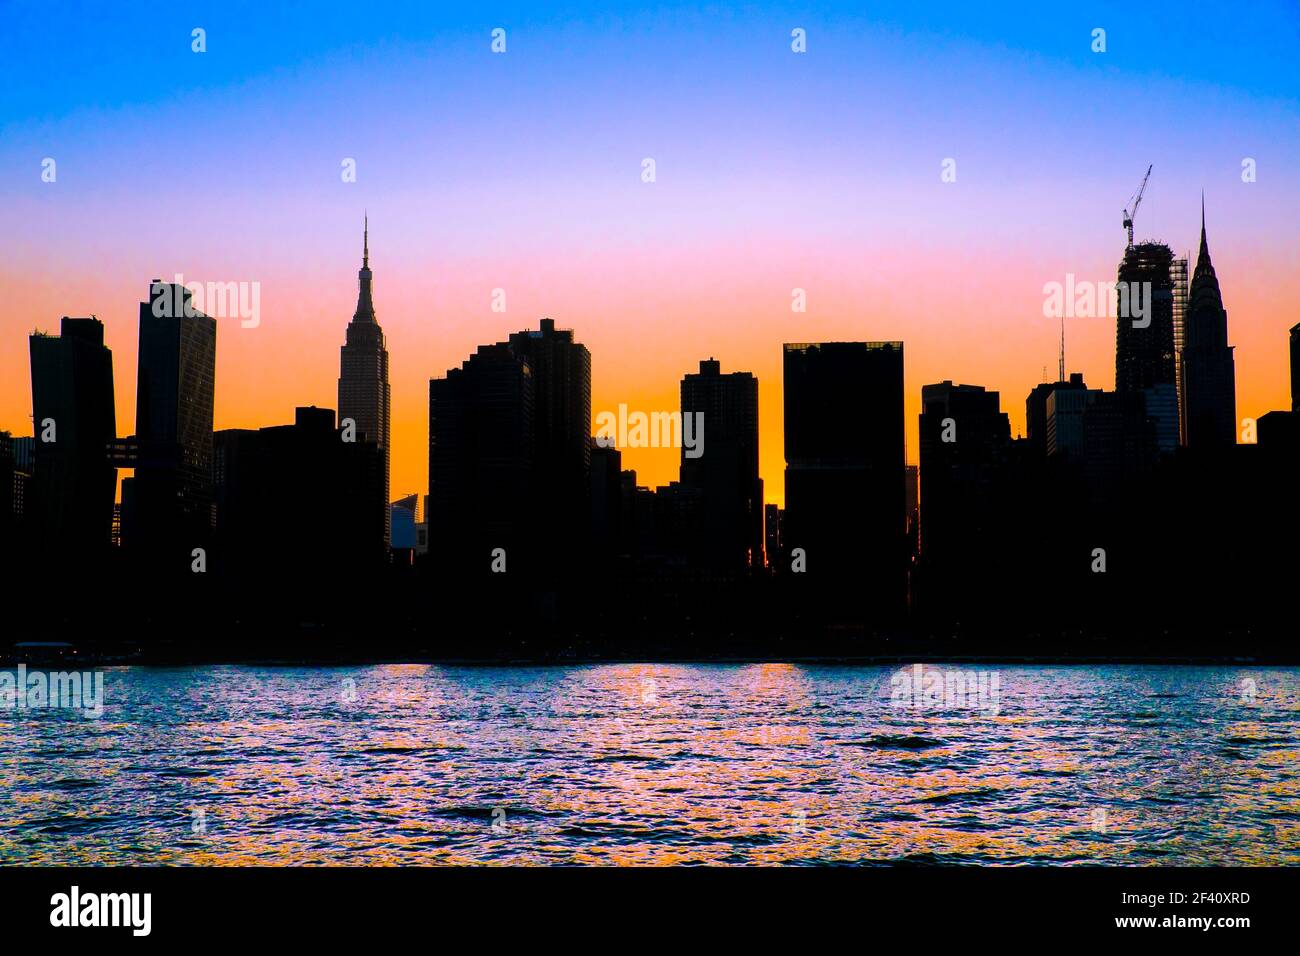 Skyline von New York City mit Silhouetten von Gebäuden und farbenprächtiger Sonnenuntergänge Himmel Stockfoto